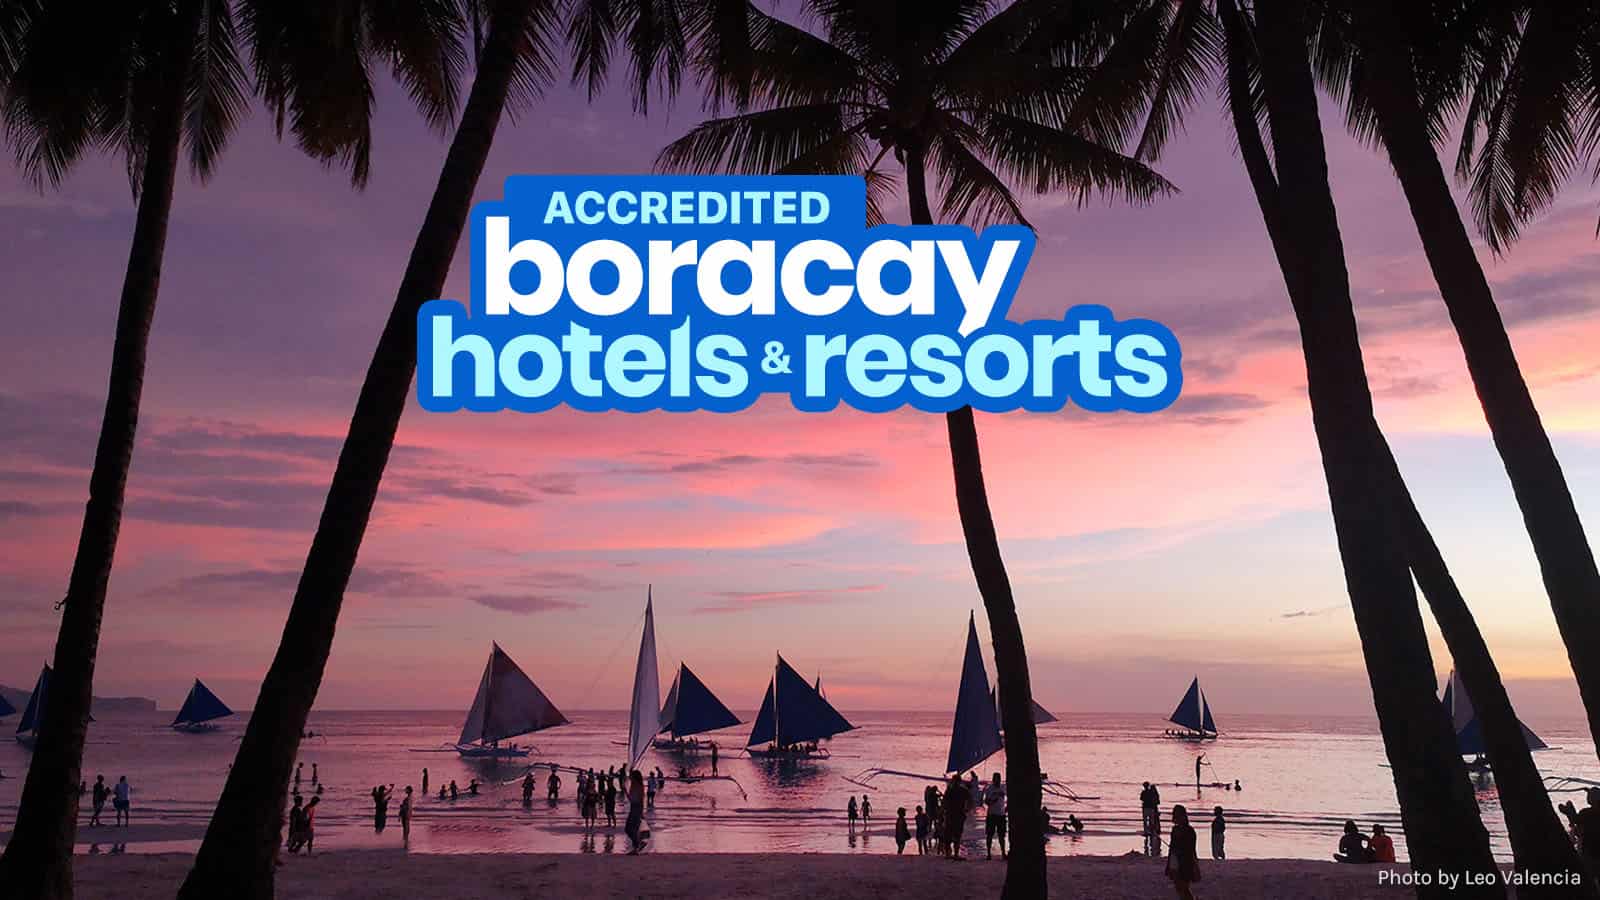 认可的长滩岛度假村、酒店及旅舍名单